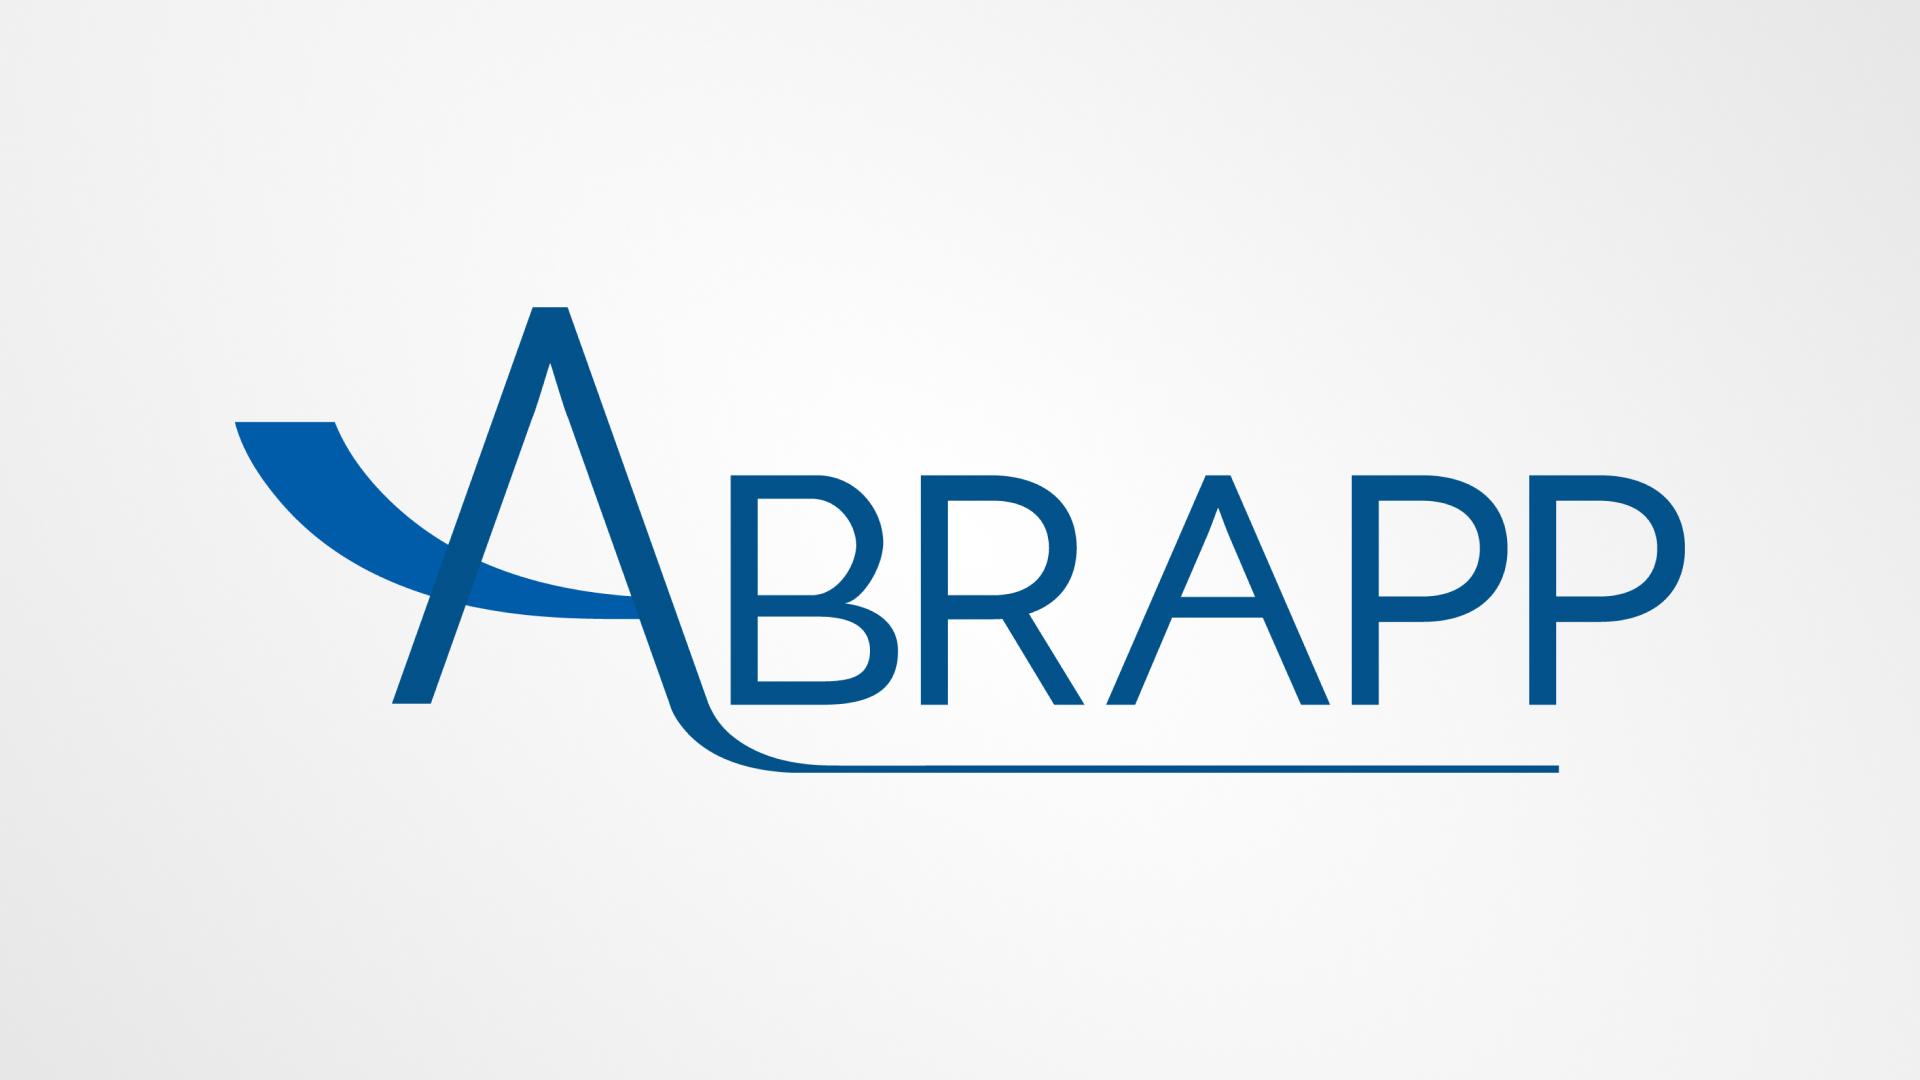 ANABBPrev é premiada com o Selo de Engajamento ABRAPP 2021